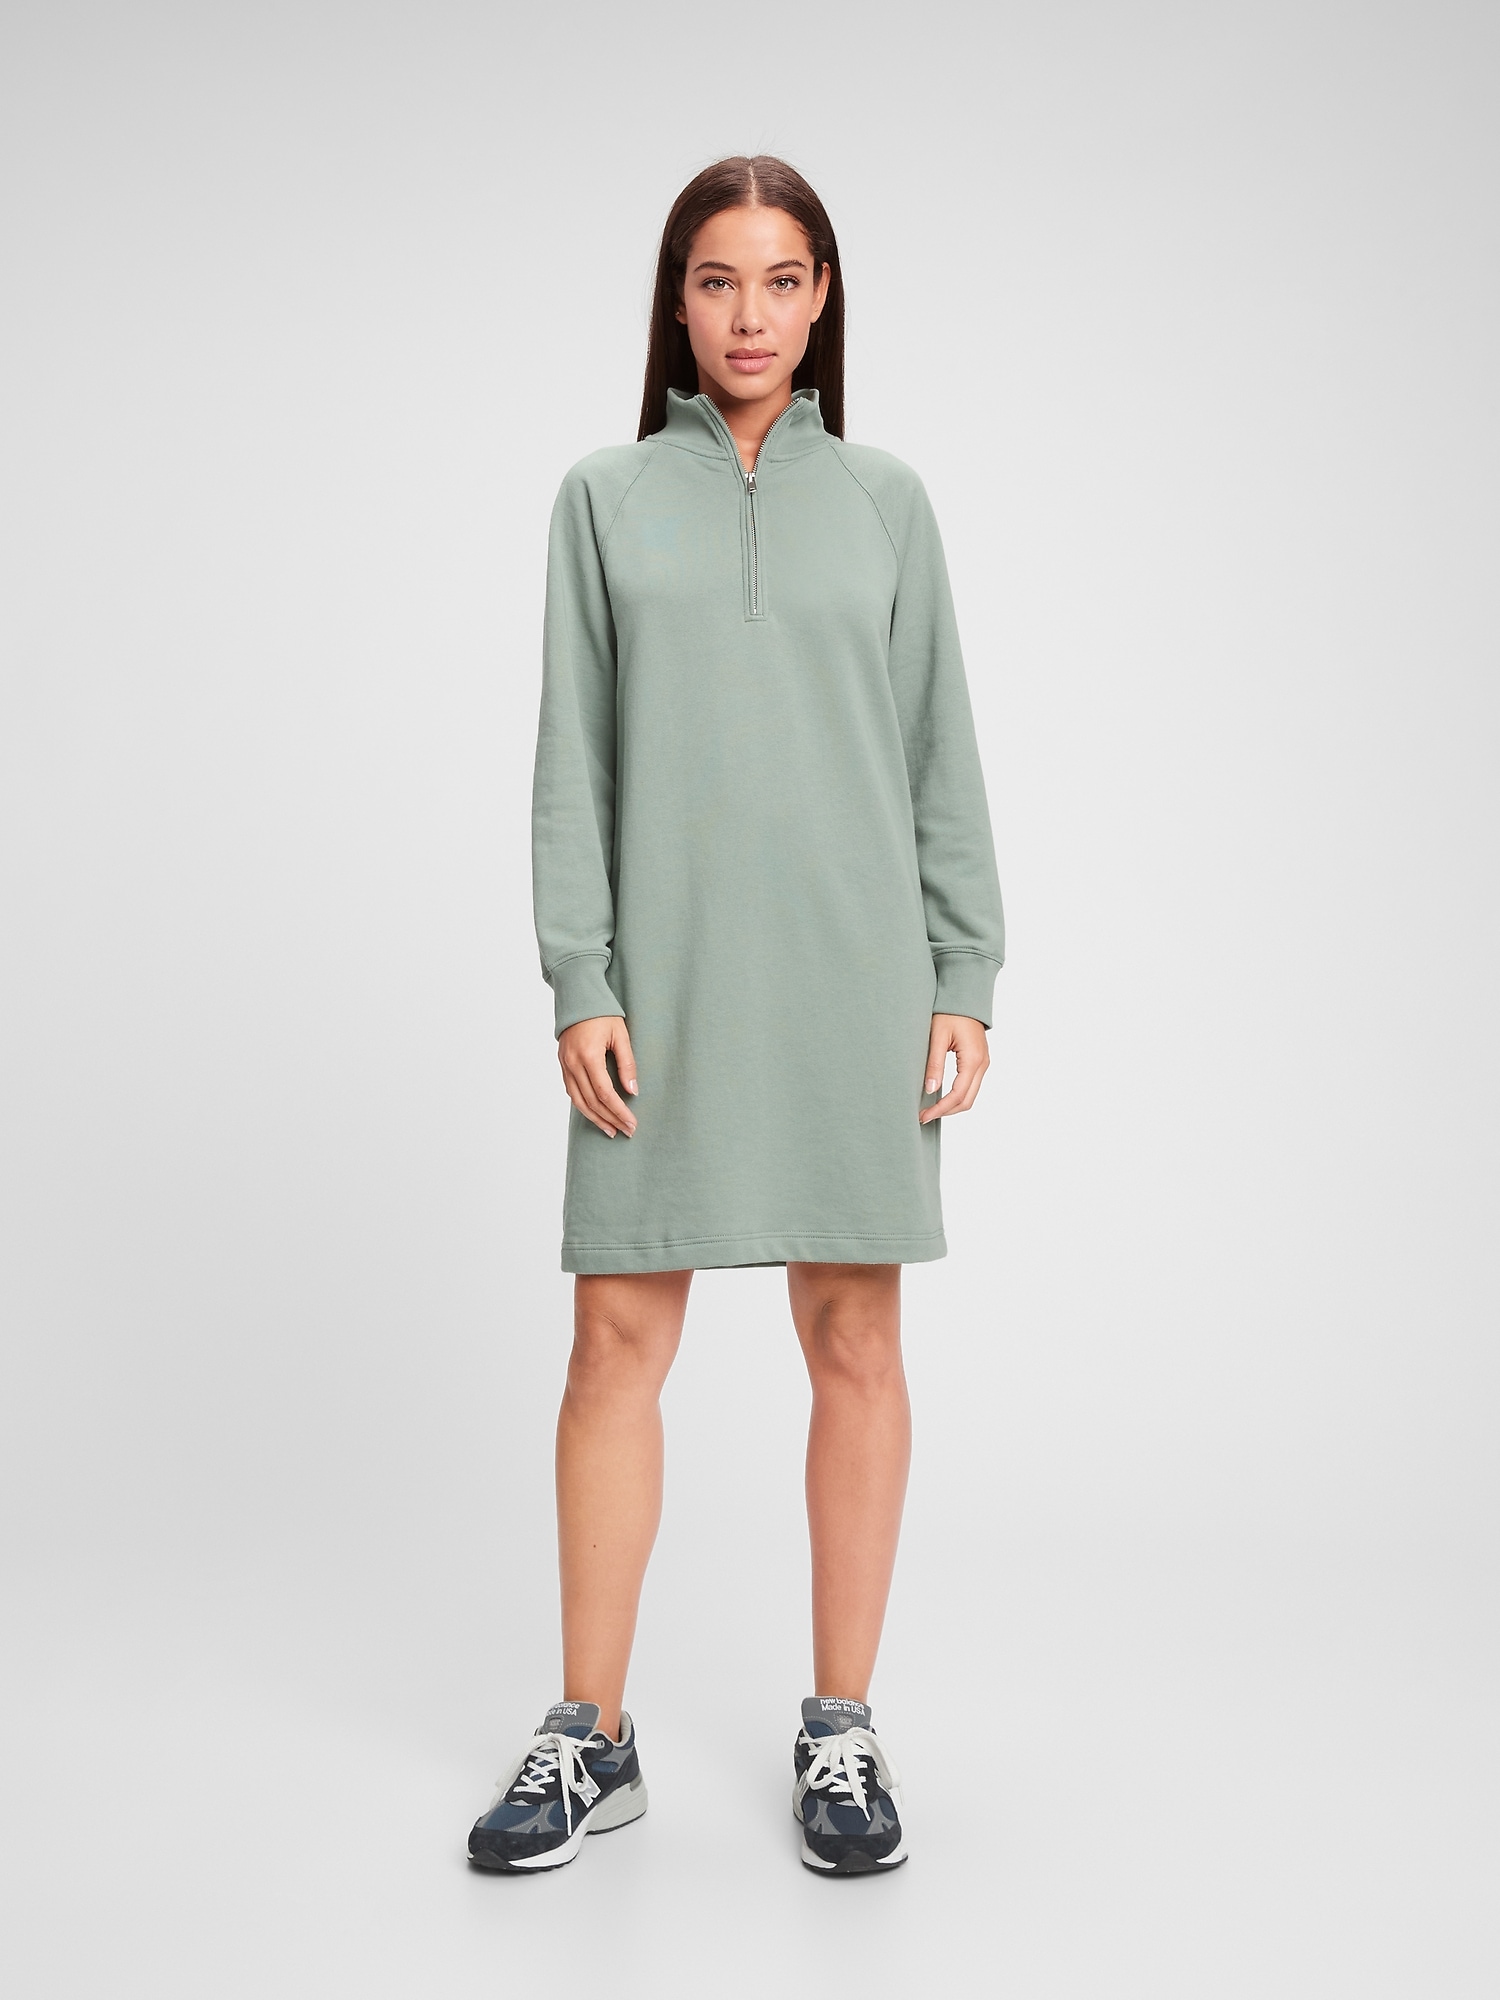 Quarter-Zip Sweatshirt Dress | Gap Factory